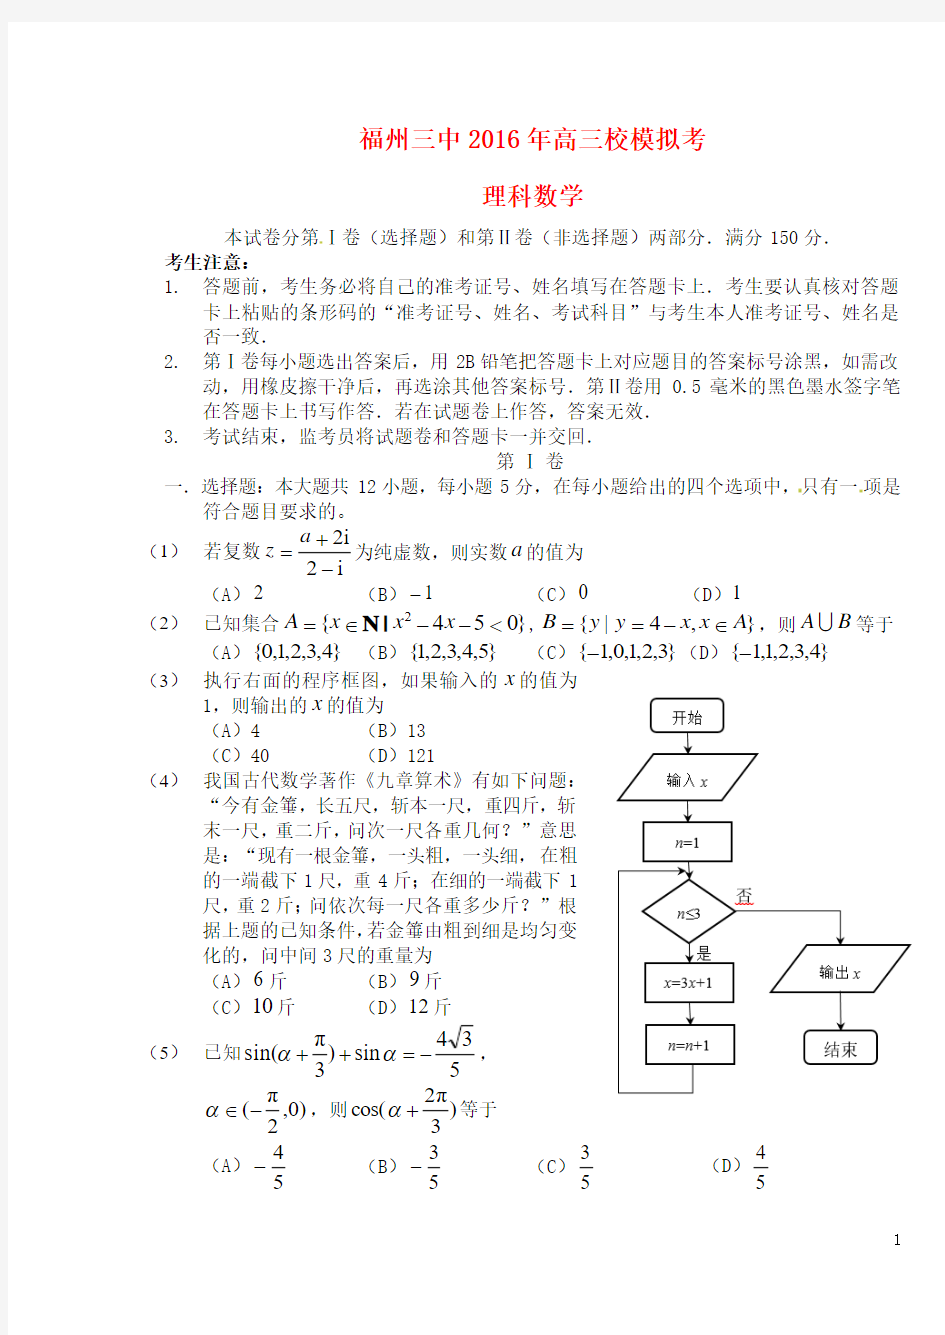 福建省福州第三中学2016届高三数学模拟考试(最后一卷)试题 理